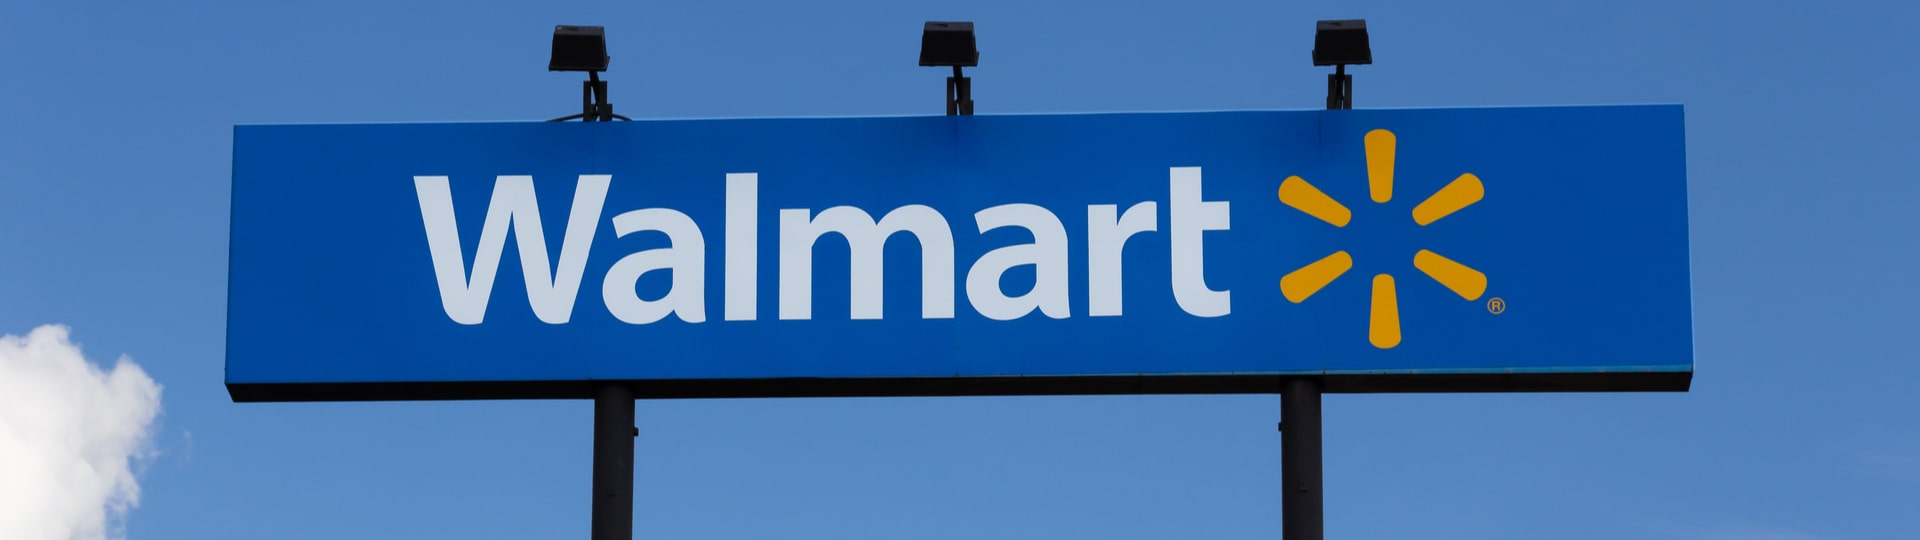 Walmart zvedl výhled letošního zisku a tržeb, má dost zásob před Vánoci